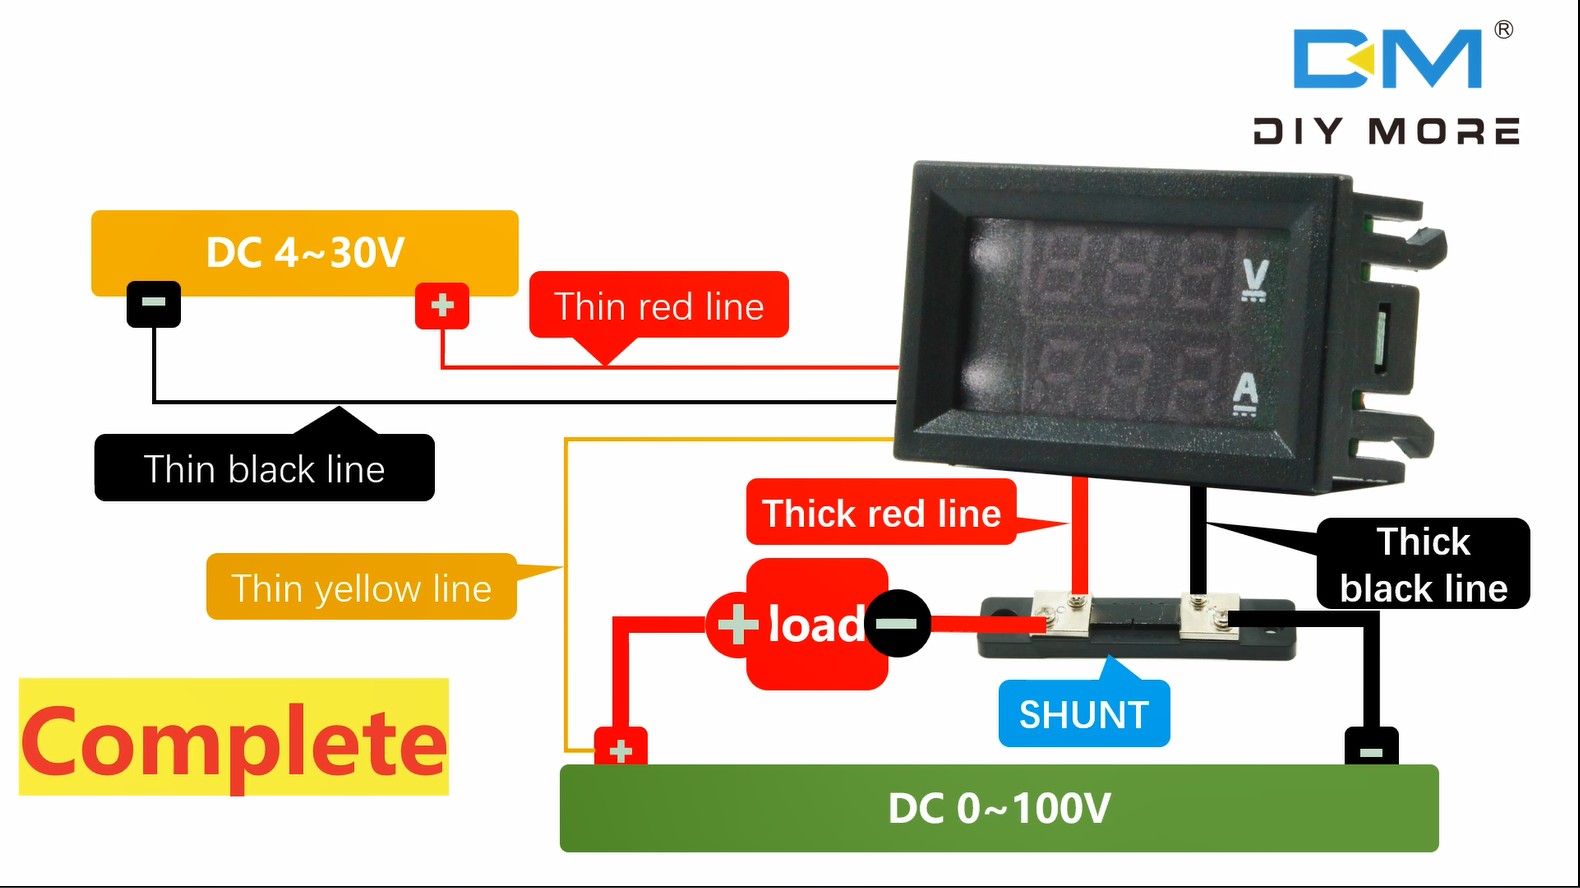 【READY STOCK】 Đồng hồ đo vôn kế và ampe kế DC 100V 100A có màn hình LED kỹ thuật cố